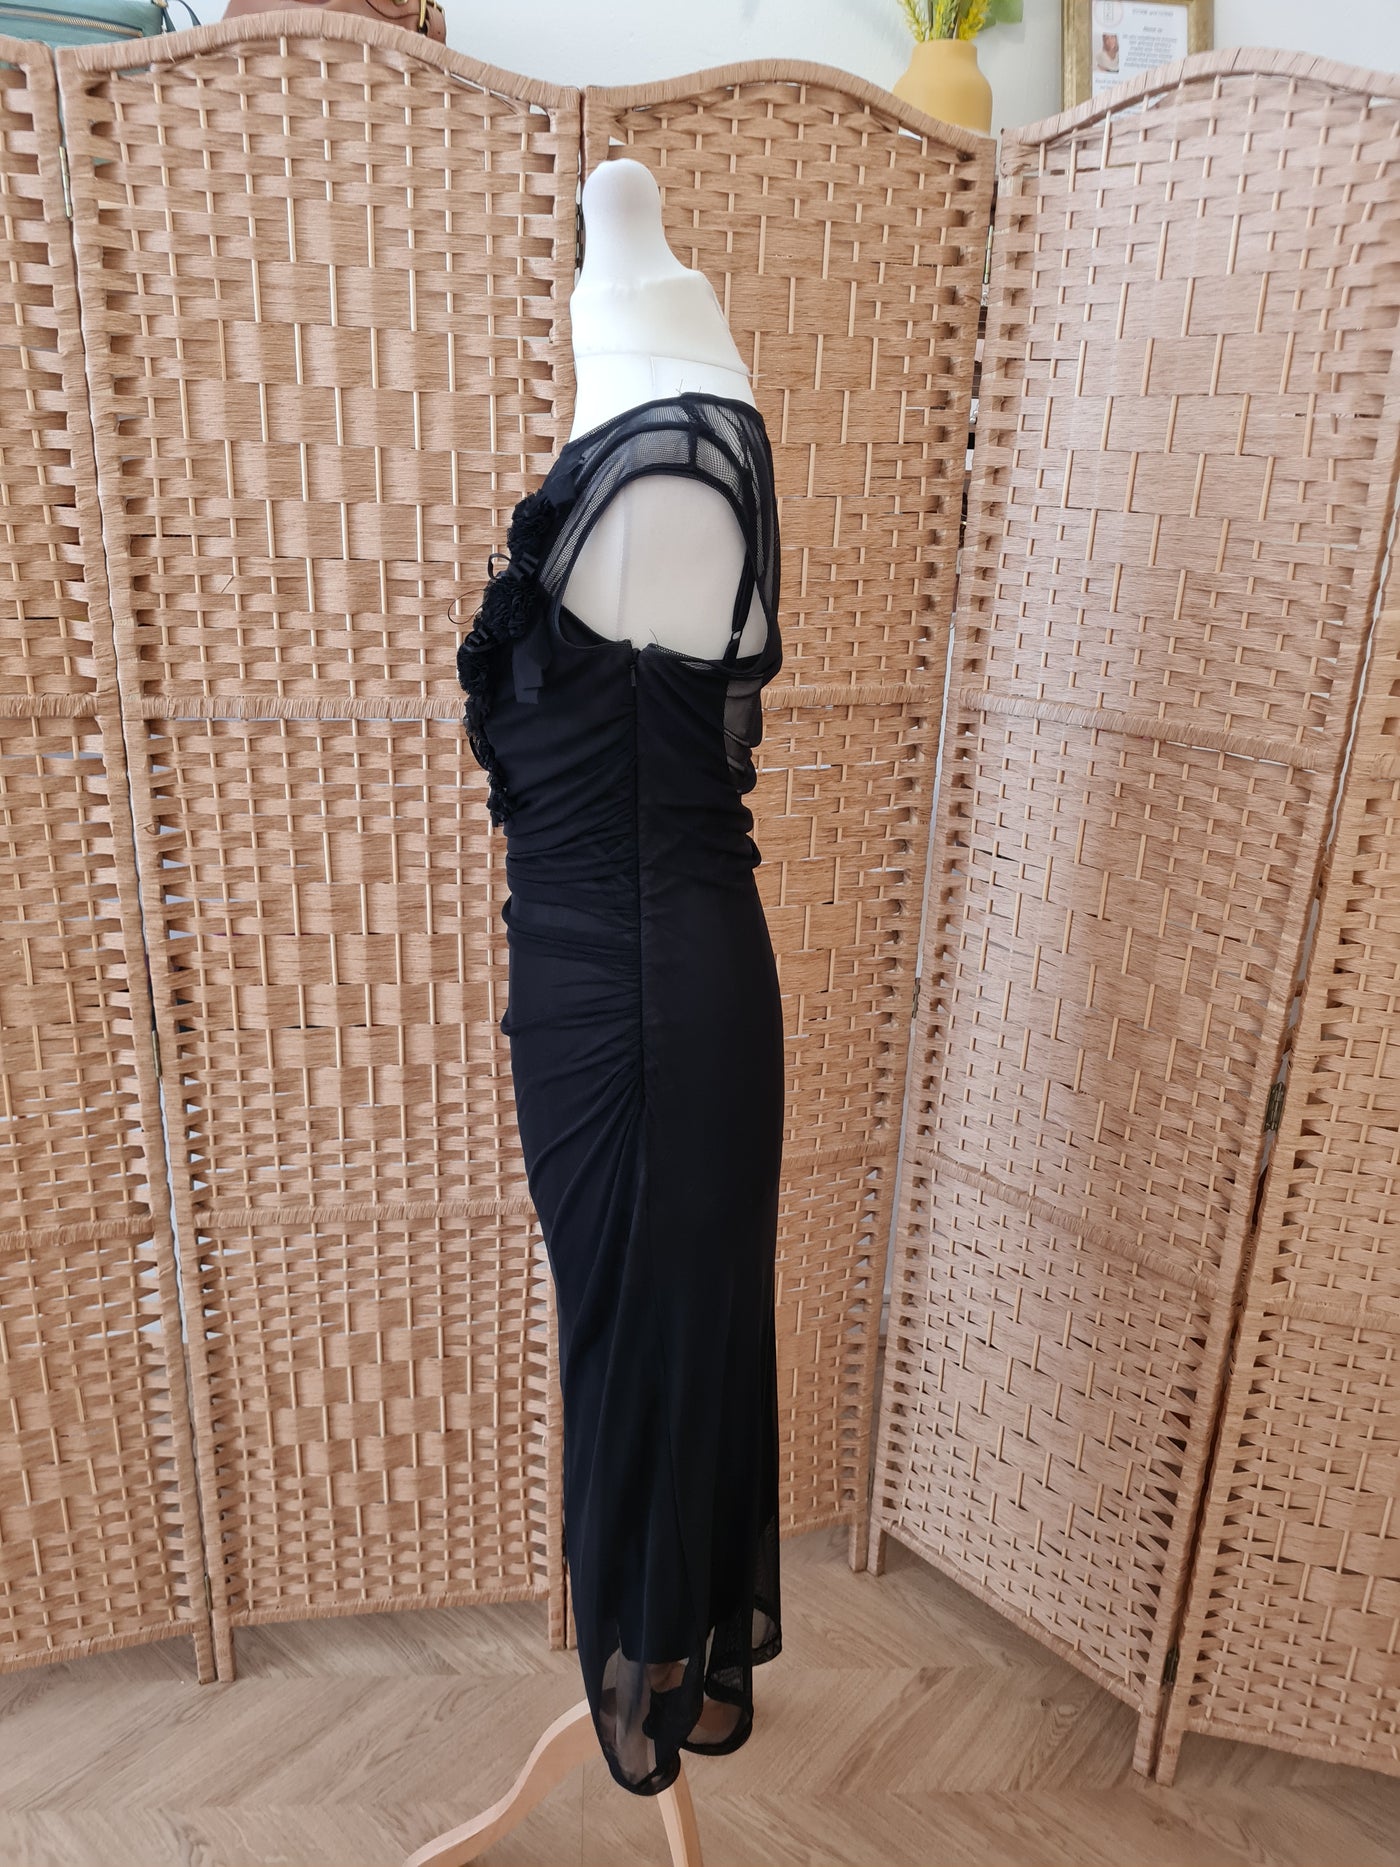 Karen Millen Black Sheer overlay Dress 12